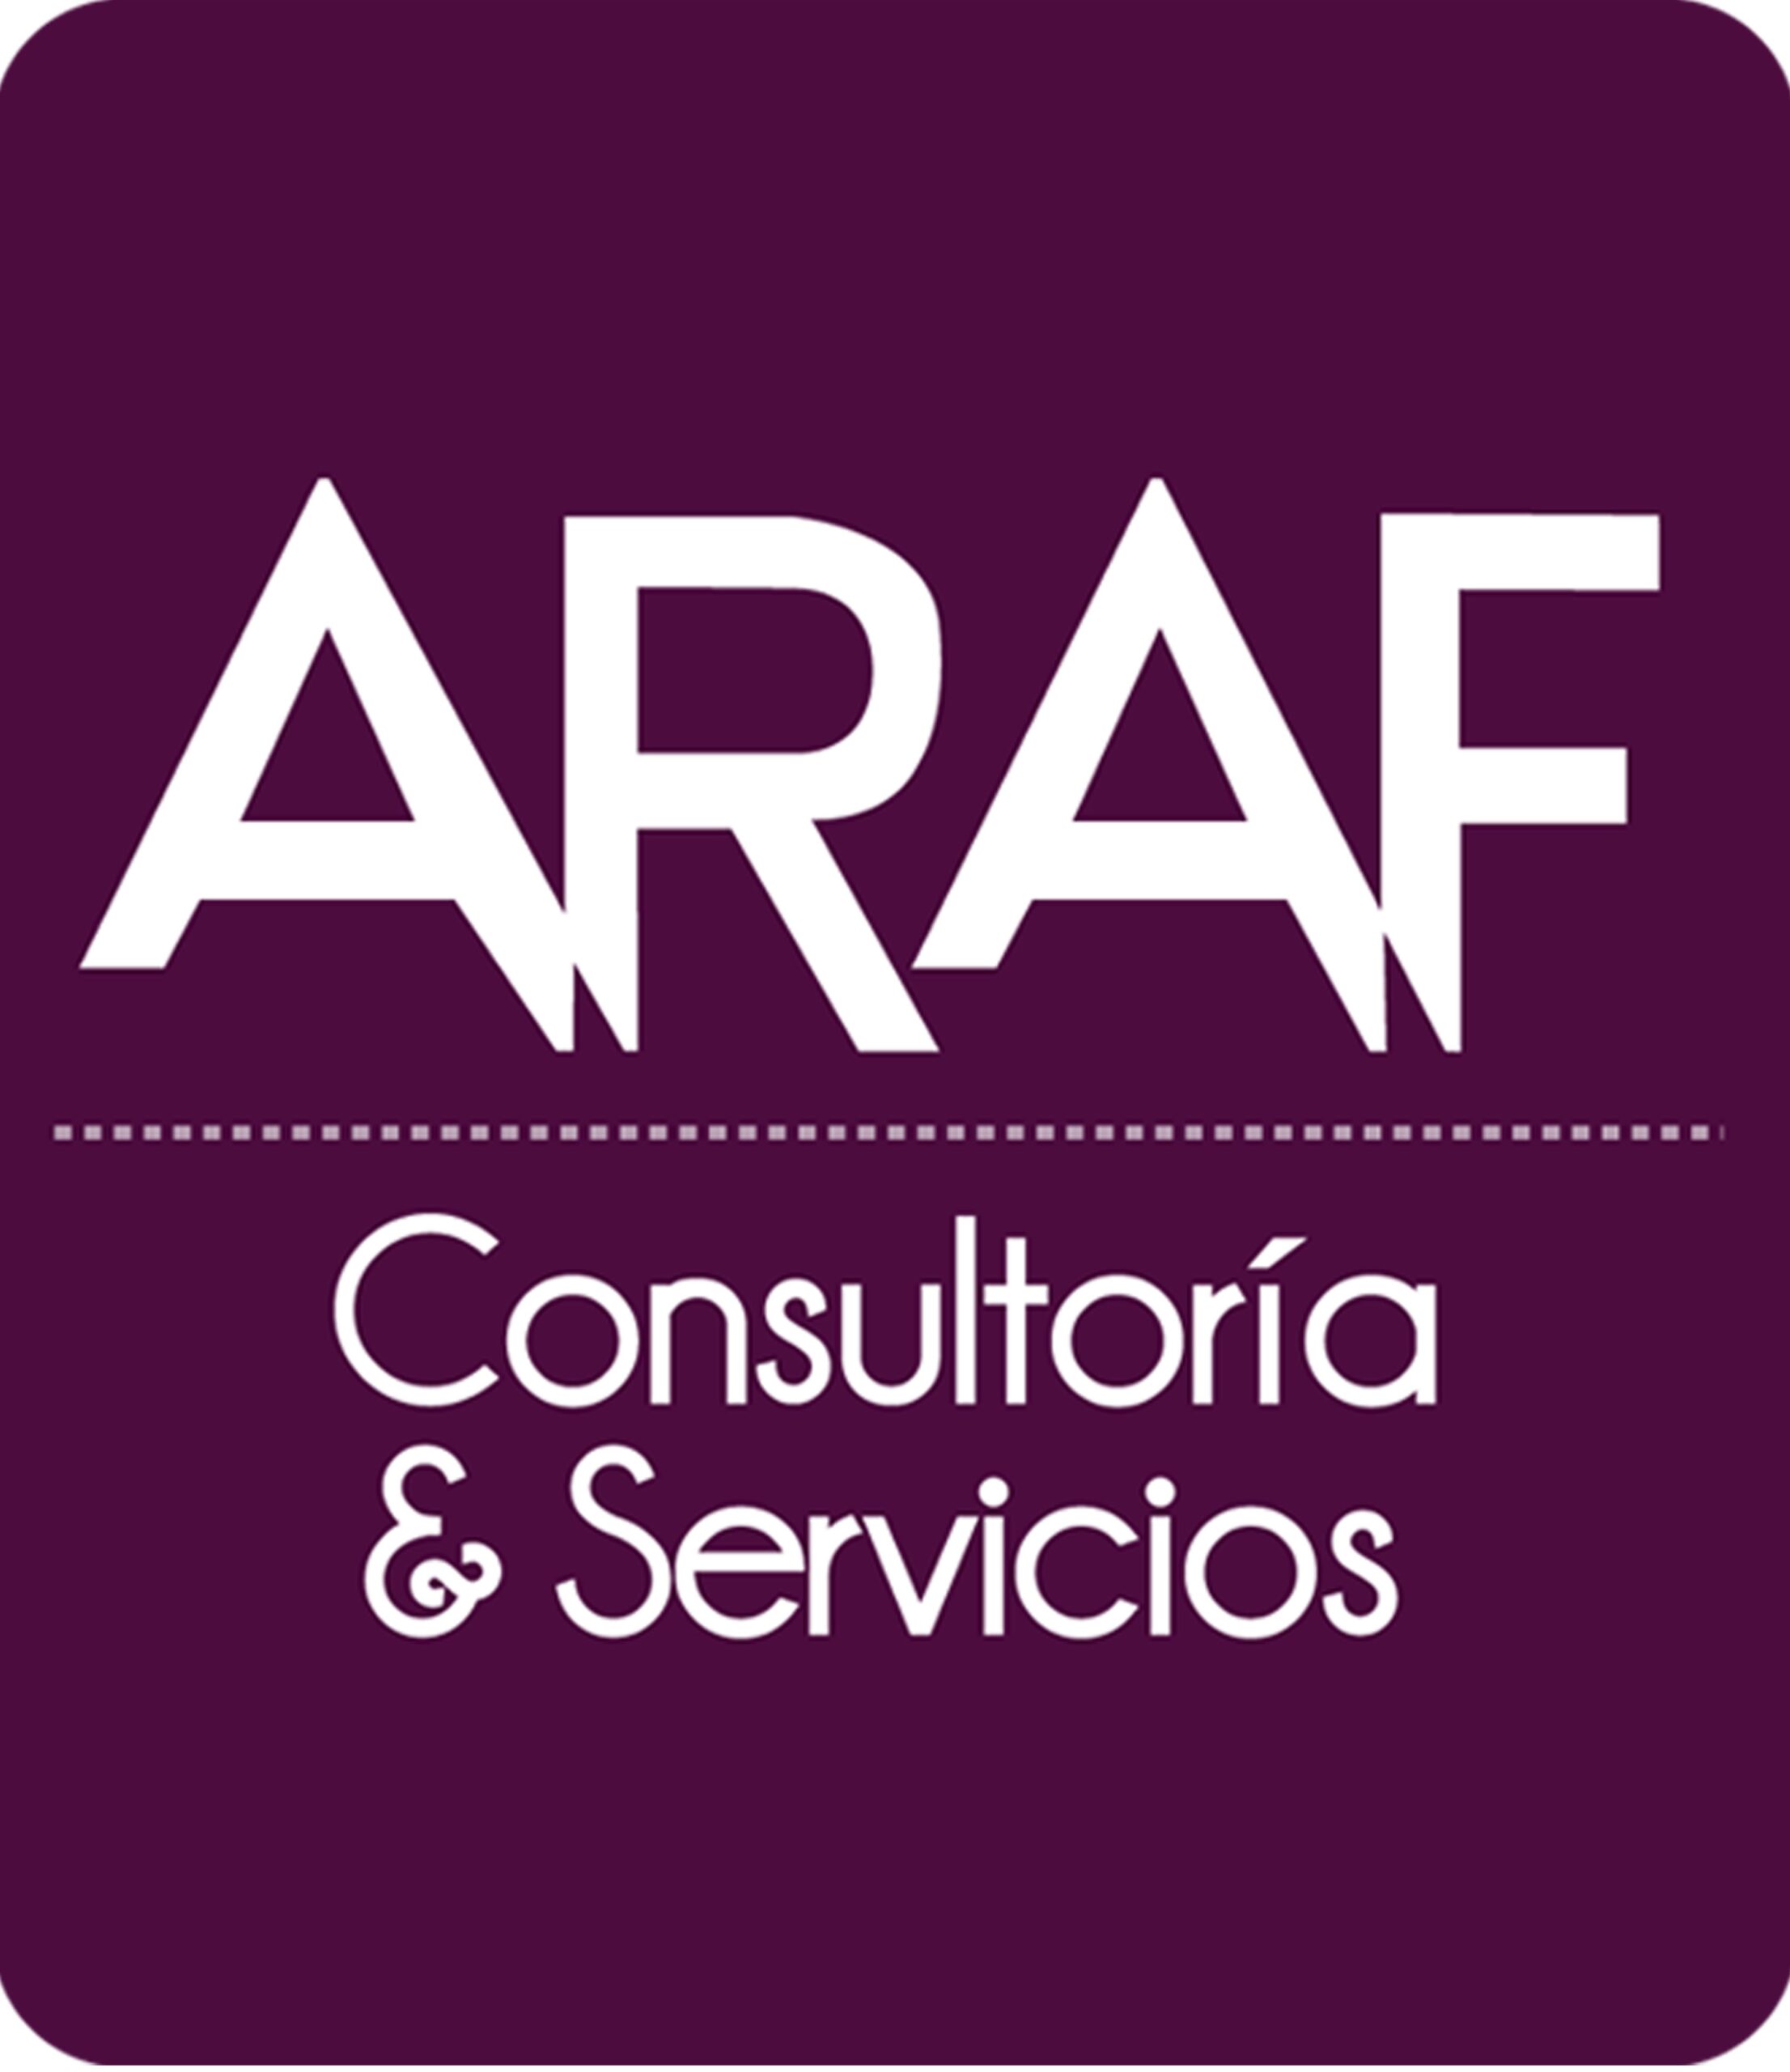 ARAF CONSULTORIA Y SERVICIOS